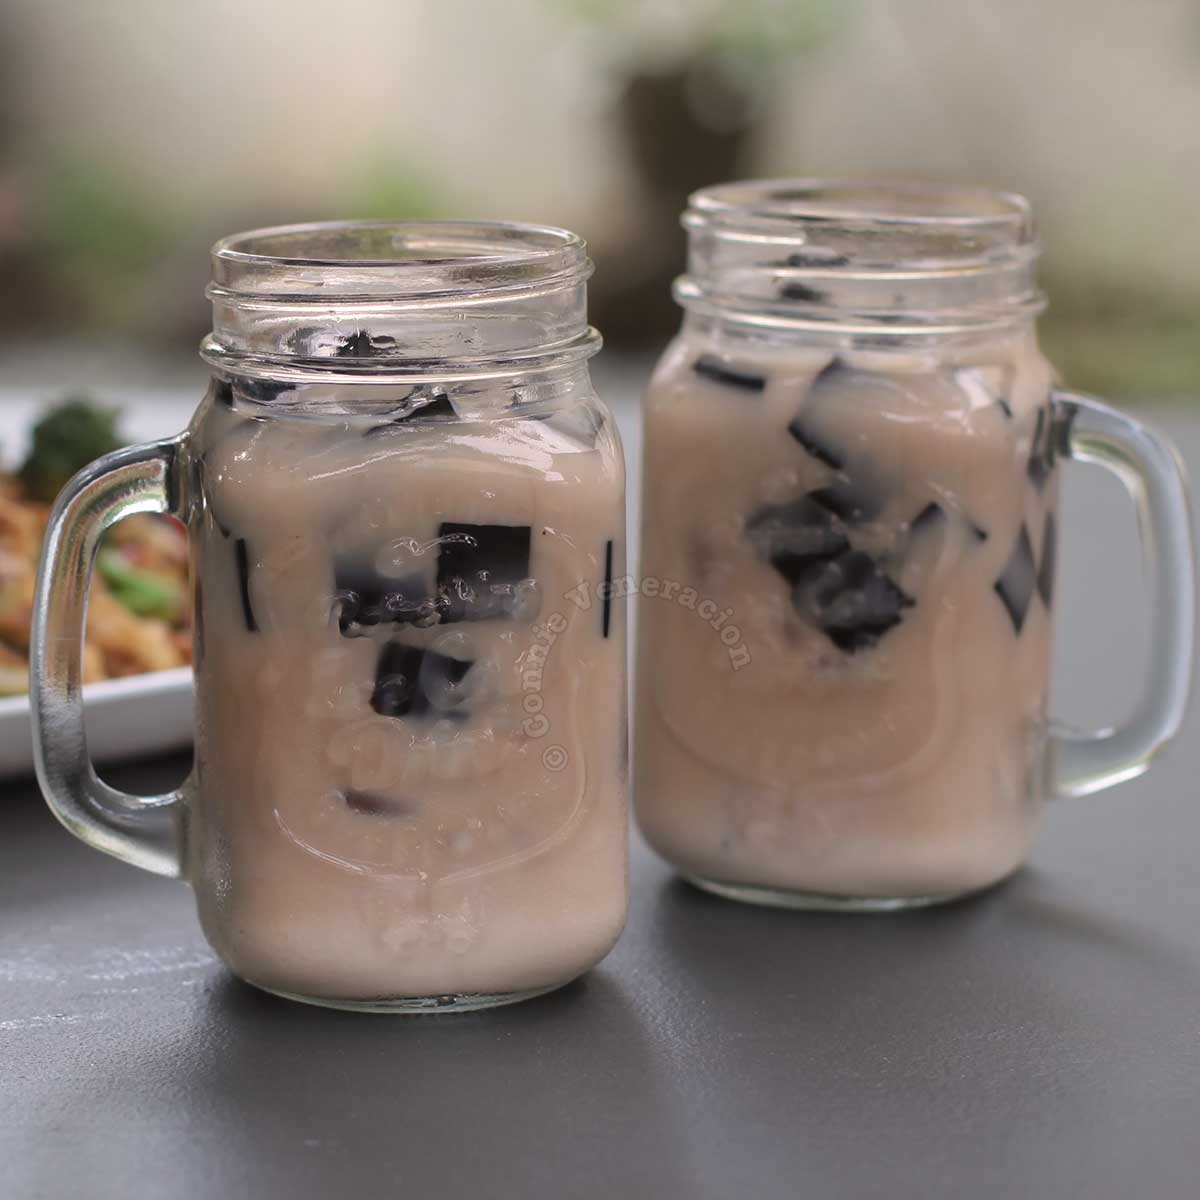 Grass jelly milk tea in Mason jars